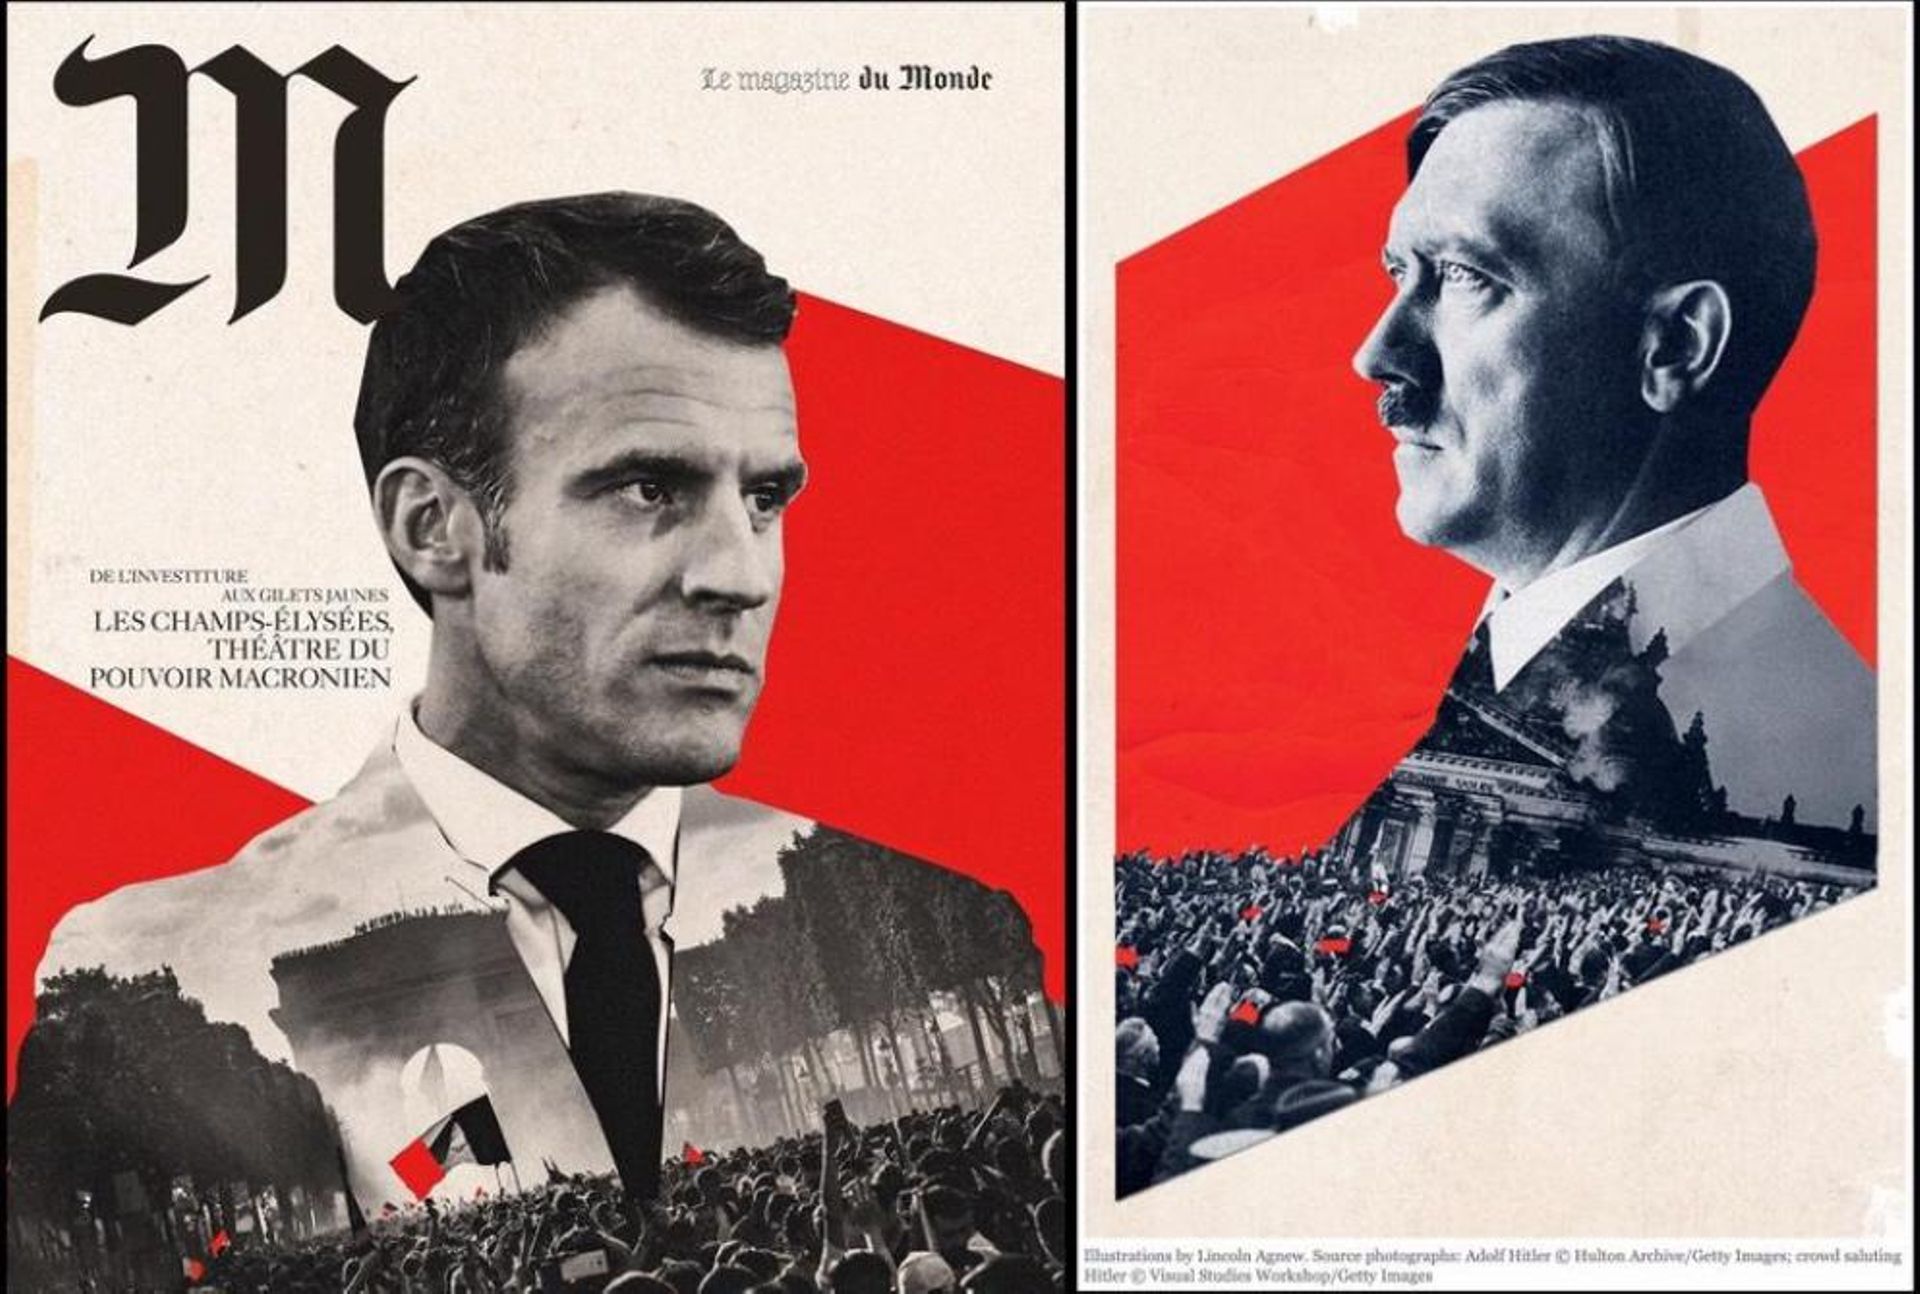 Couverture de "M Le magazine du Monde" à gauche, photo-montage de Lincoln Agnew pour Harper's à droite.